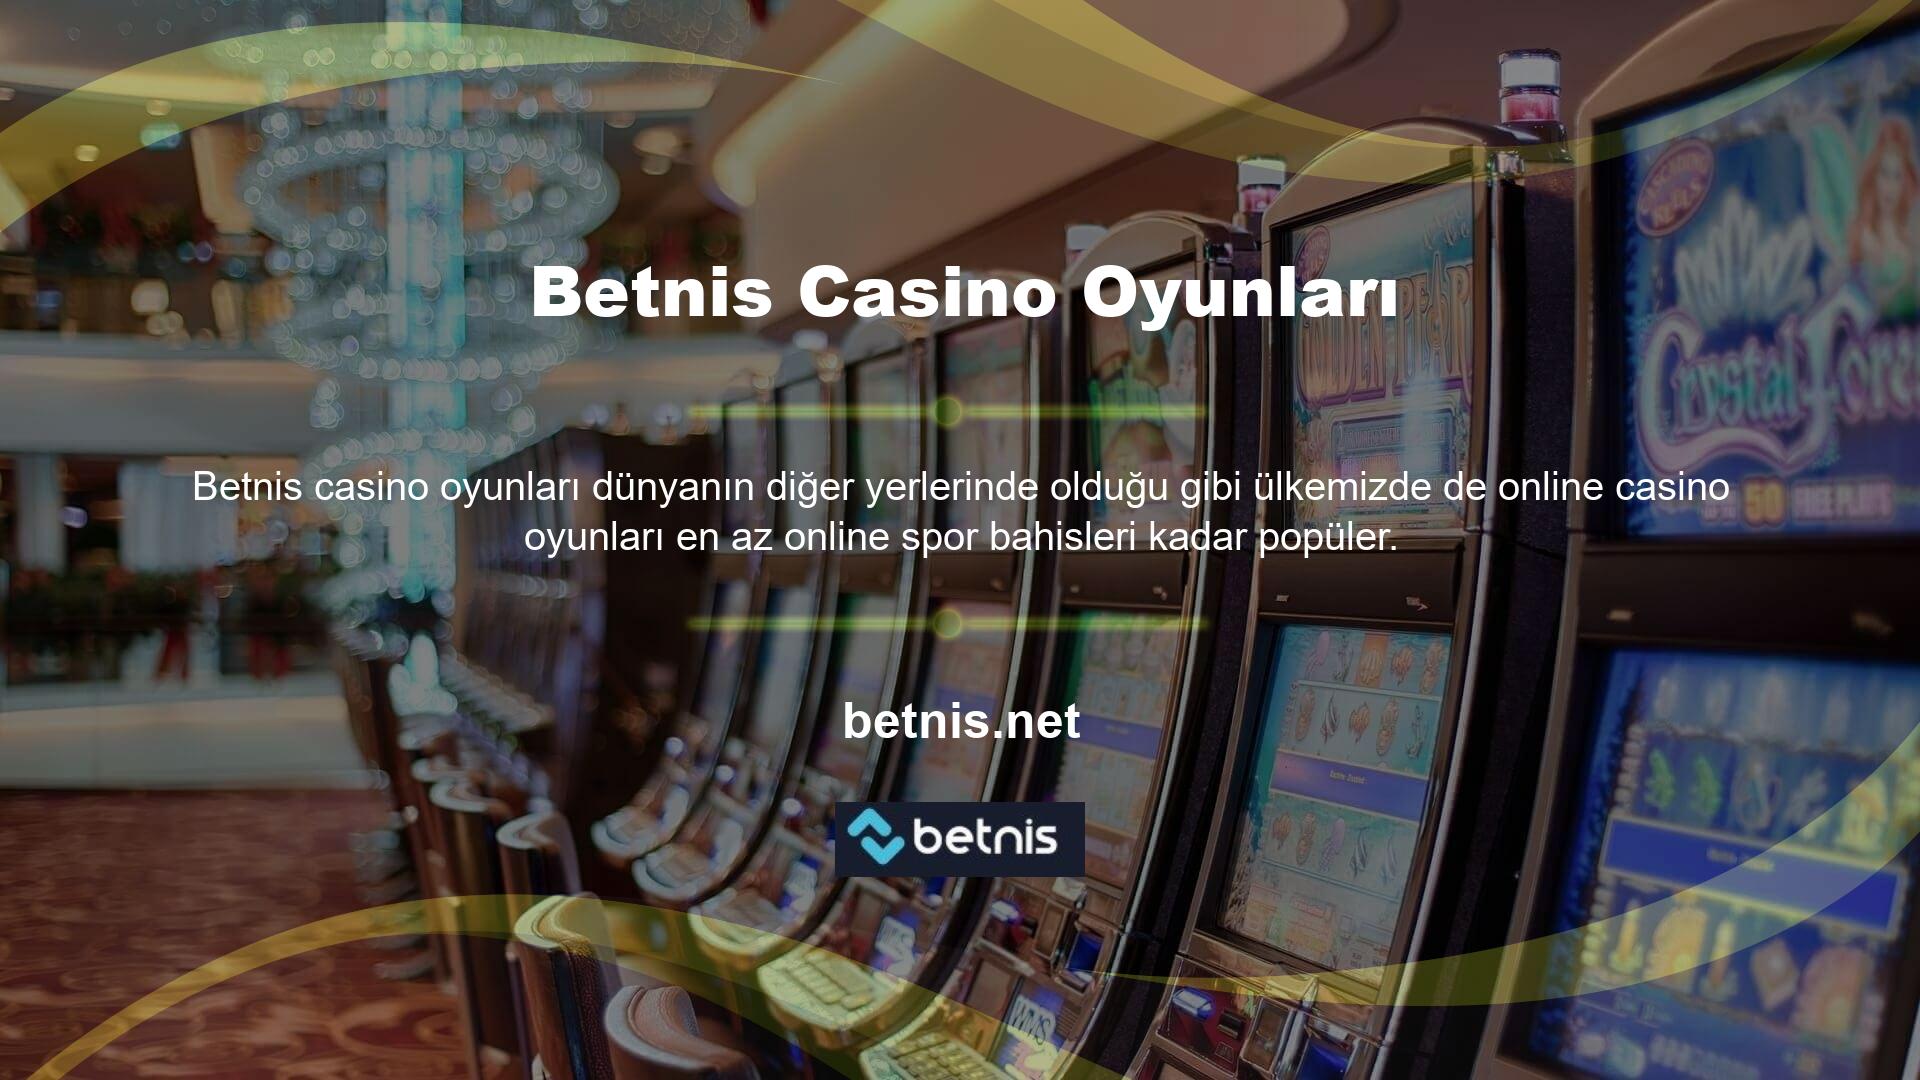 Çevrimiçi casino hizmetleri sunan çevrimiçi casino siteleri ve oyun siteleri, her zaman ve her yerde harika bir canlı casino deneyimi sunar